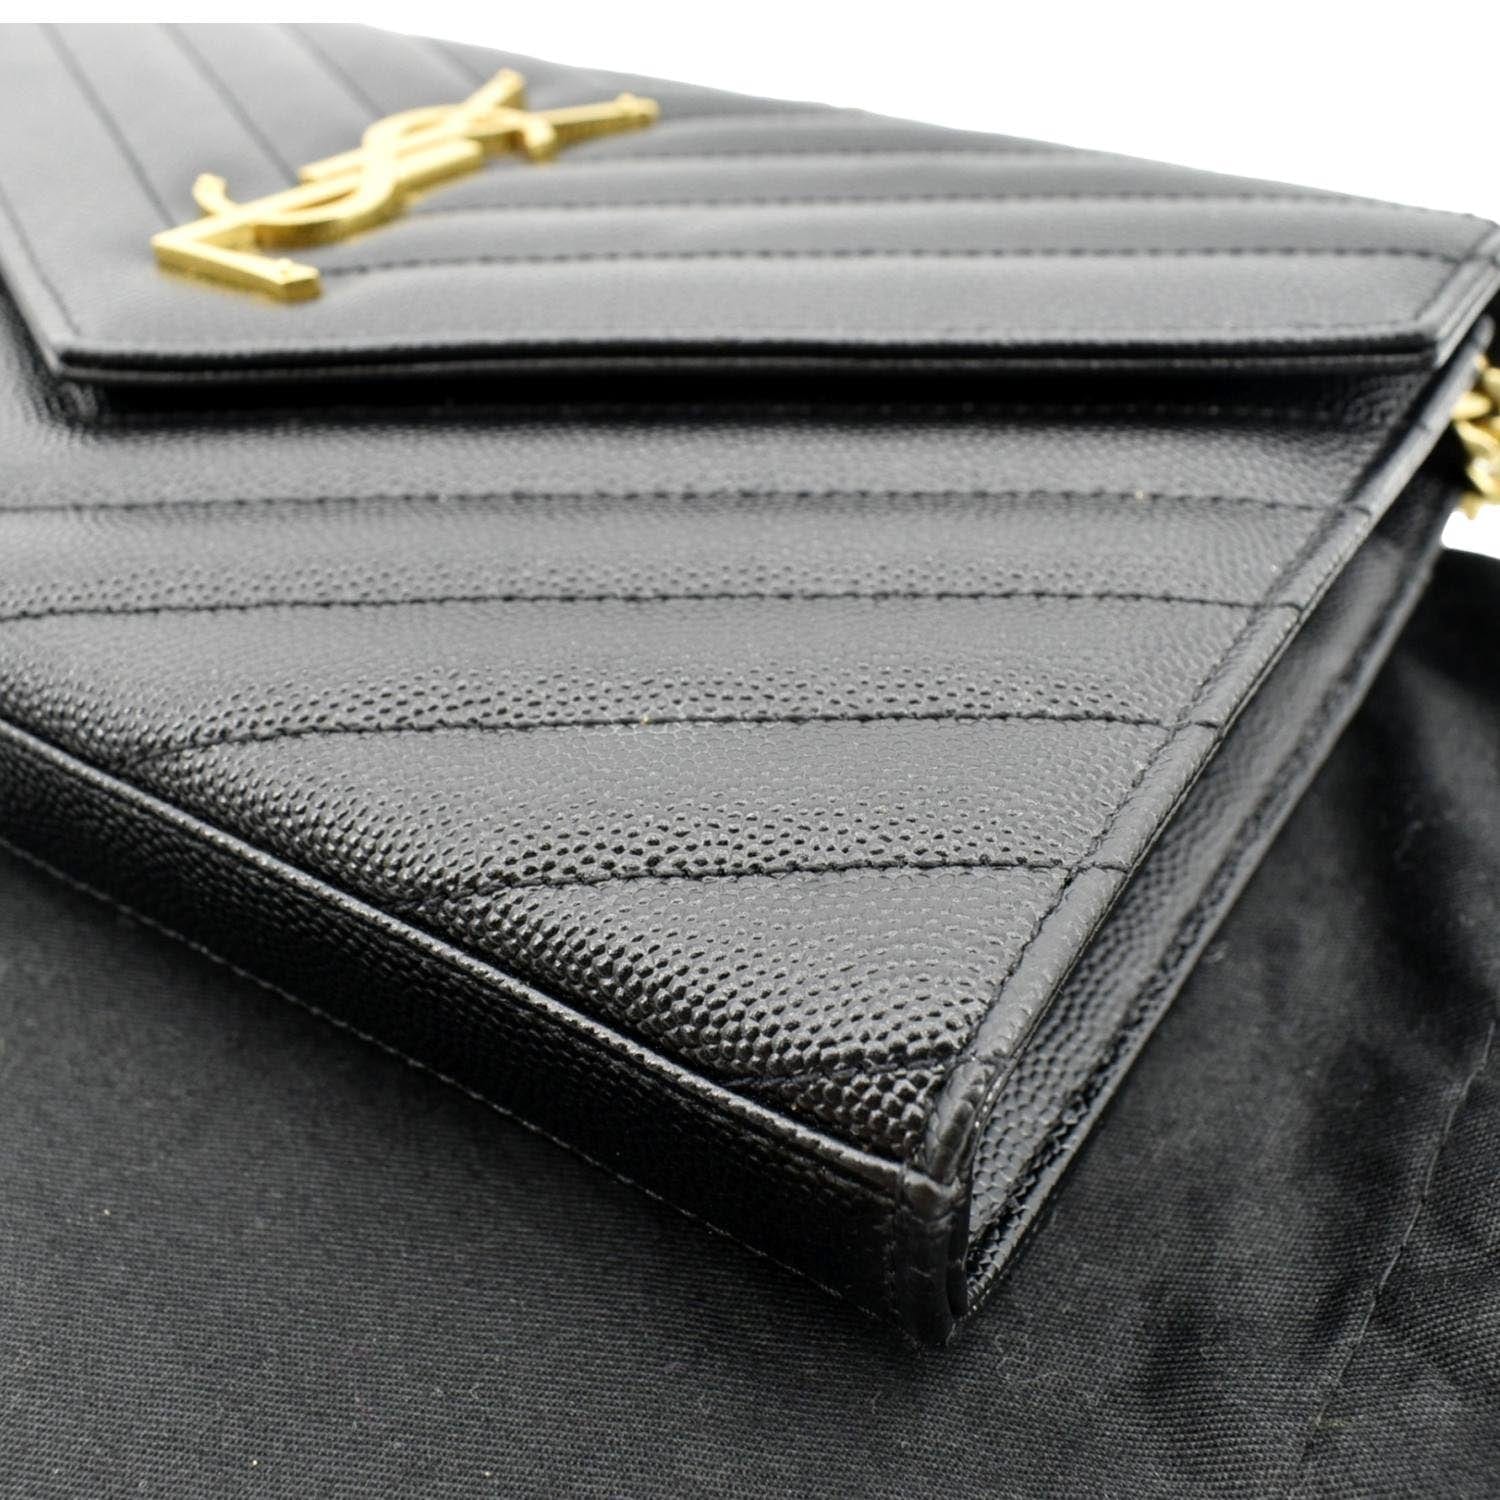 SAINT LAURENT PARIS Shoulder Bag 515822 Chain bag leather Black Silver –